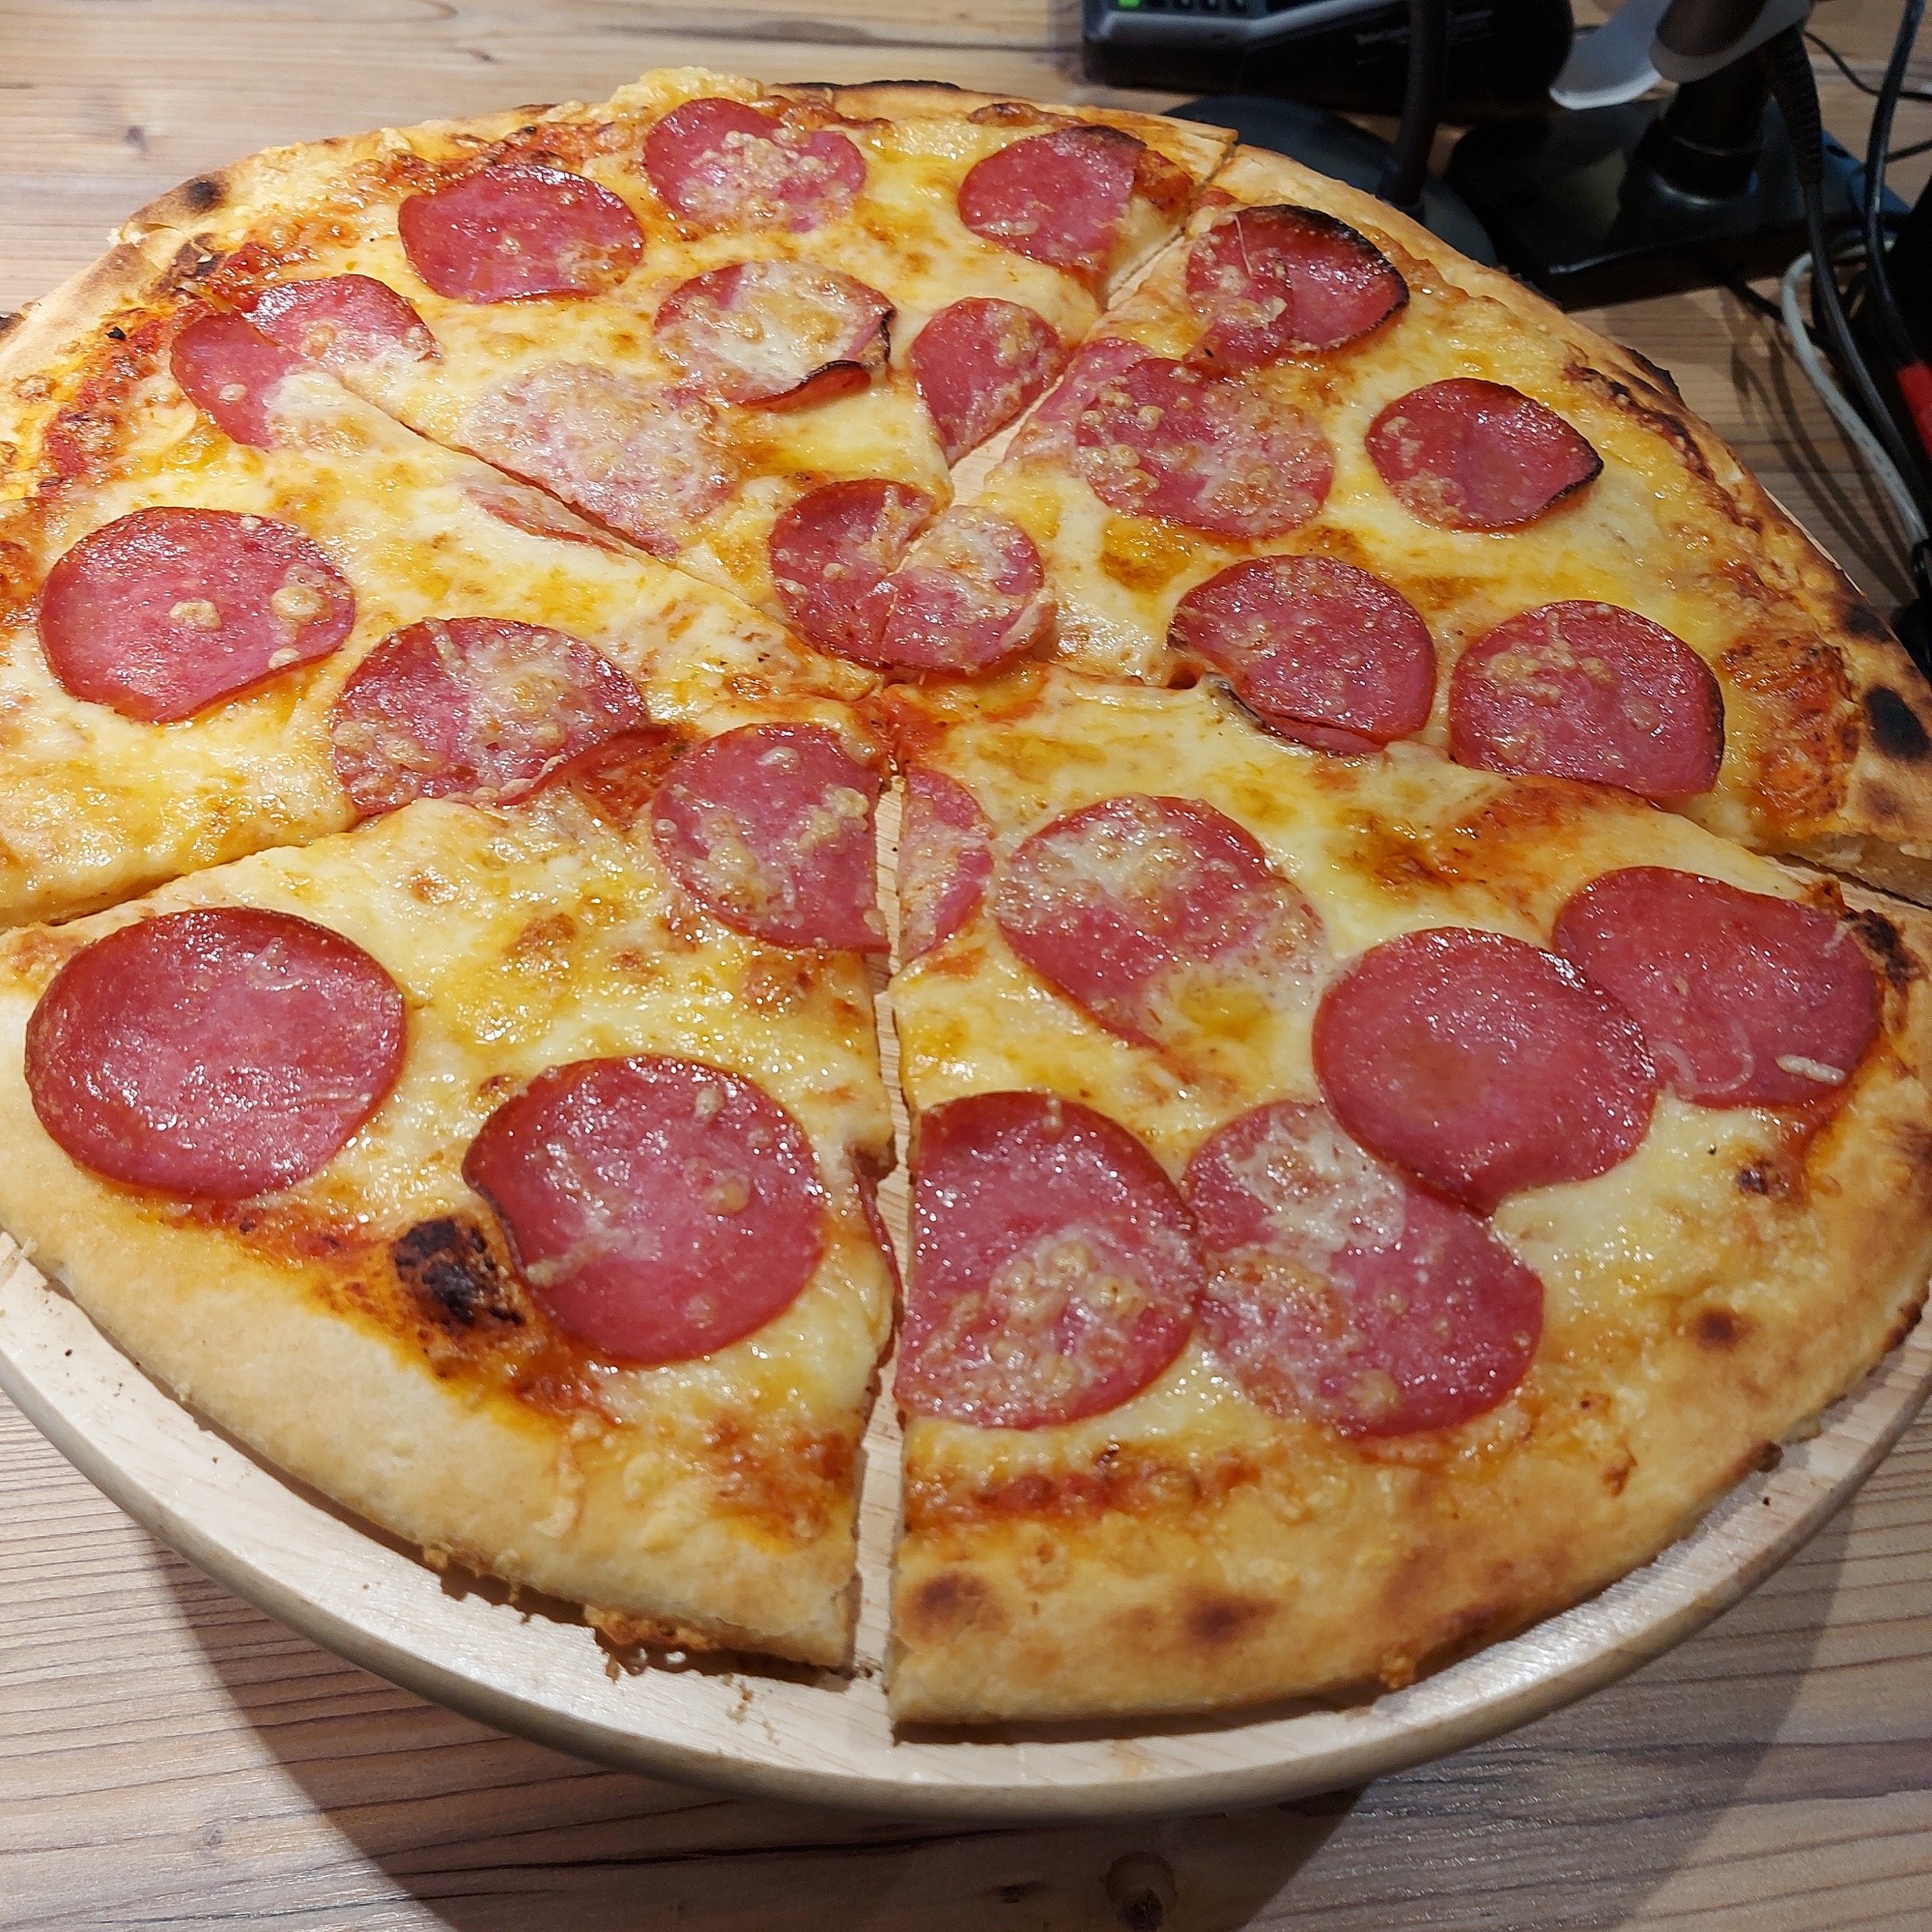 Die Theke der Brotzeithütte am Autohof mit einer Pizza Salami